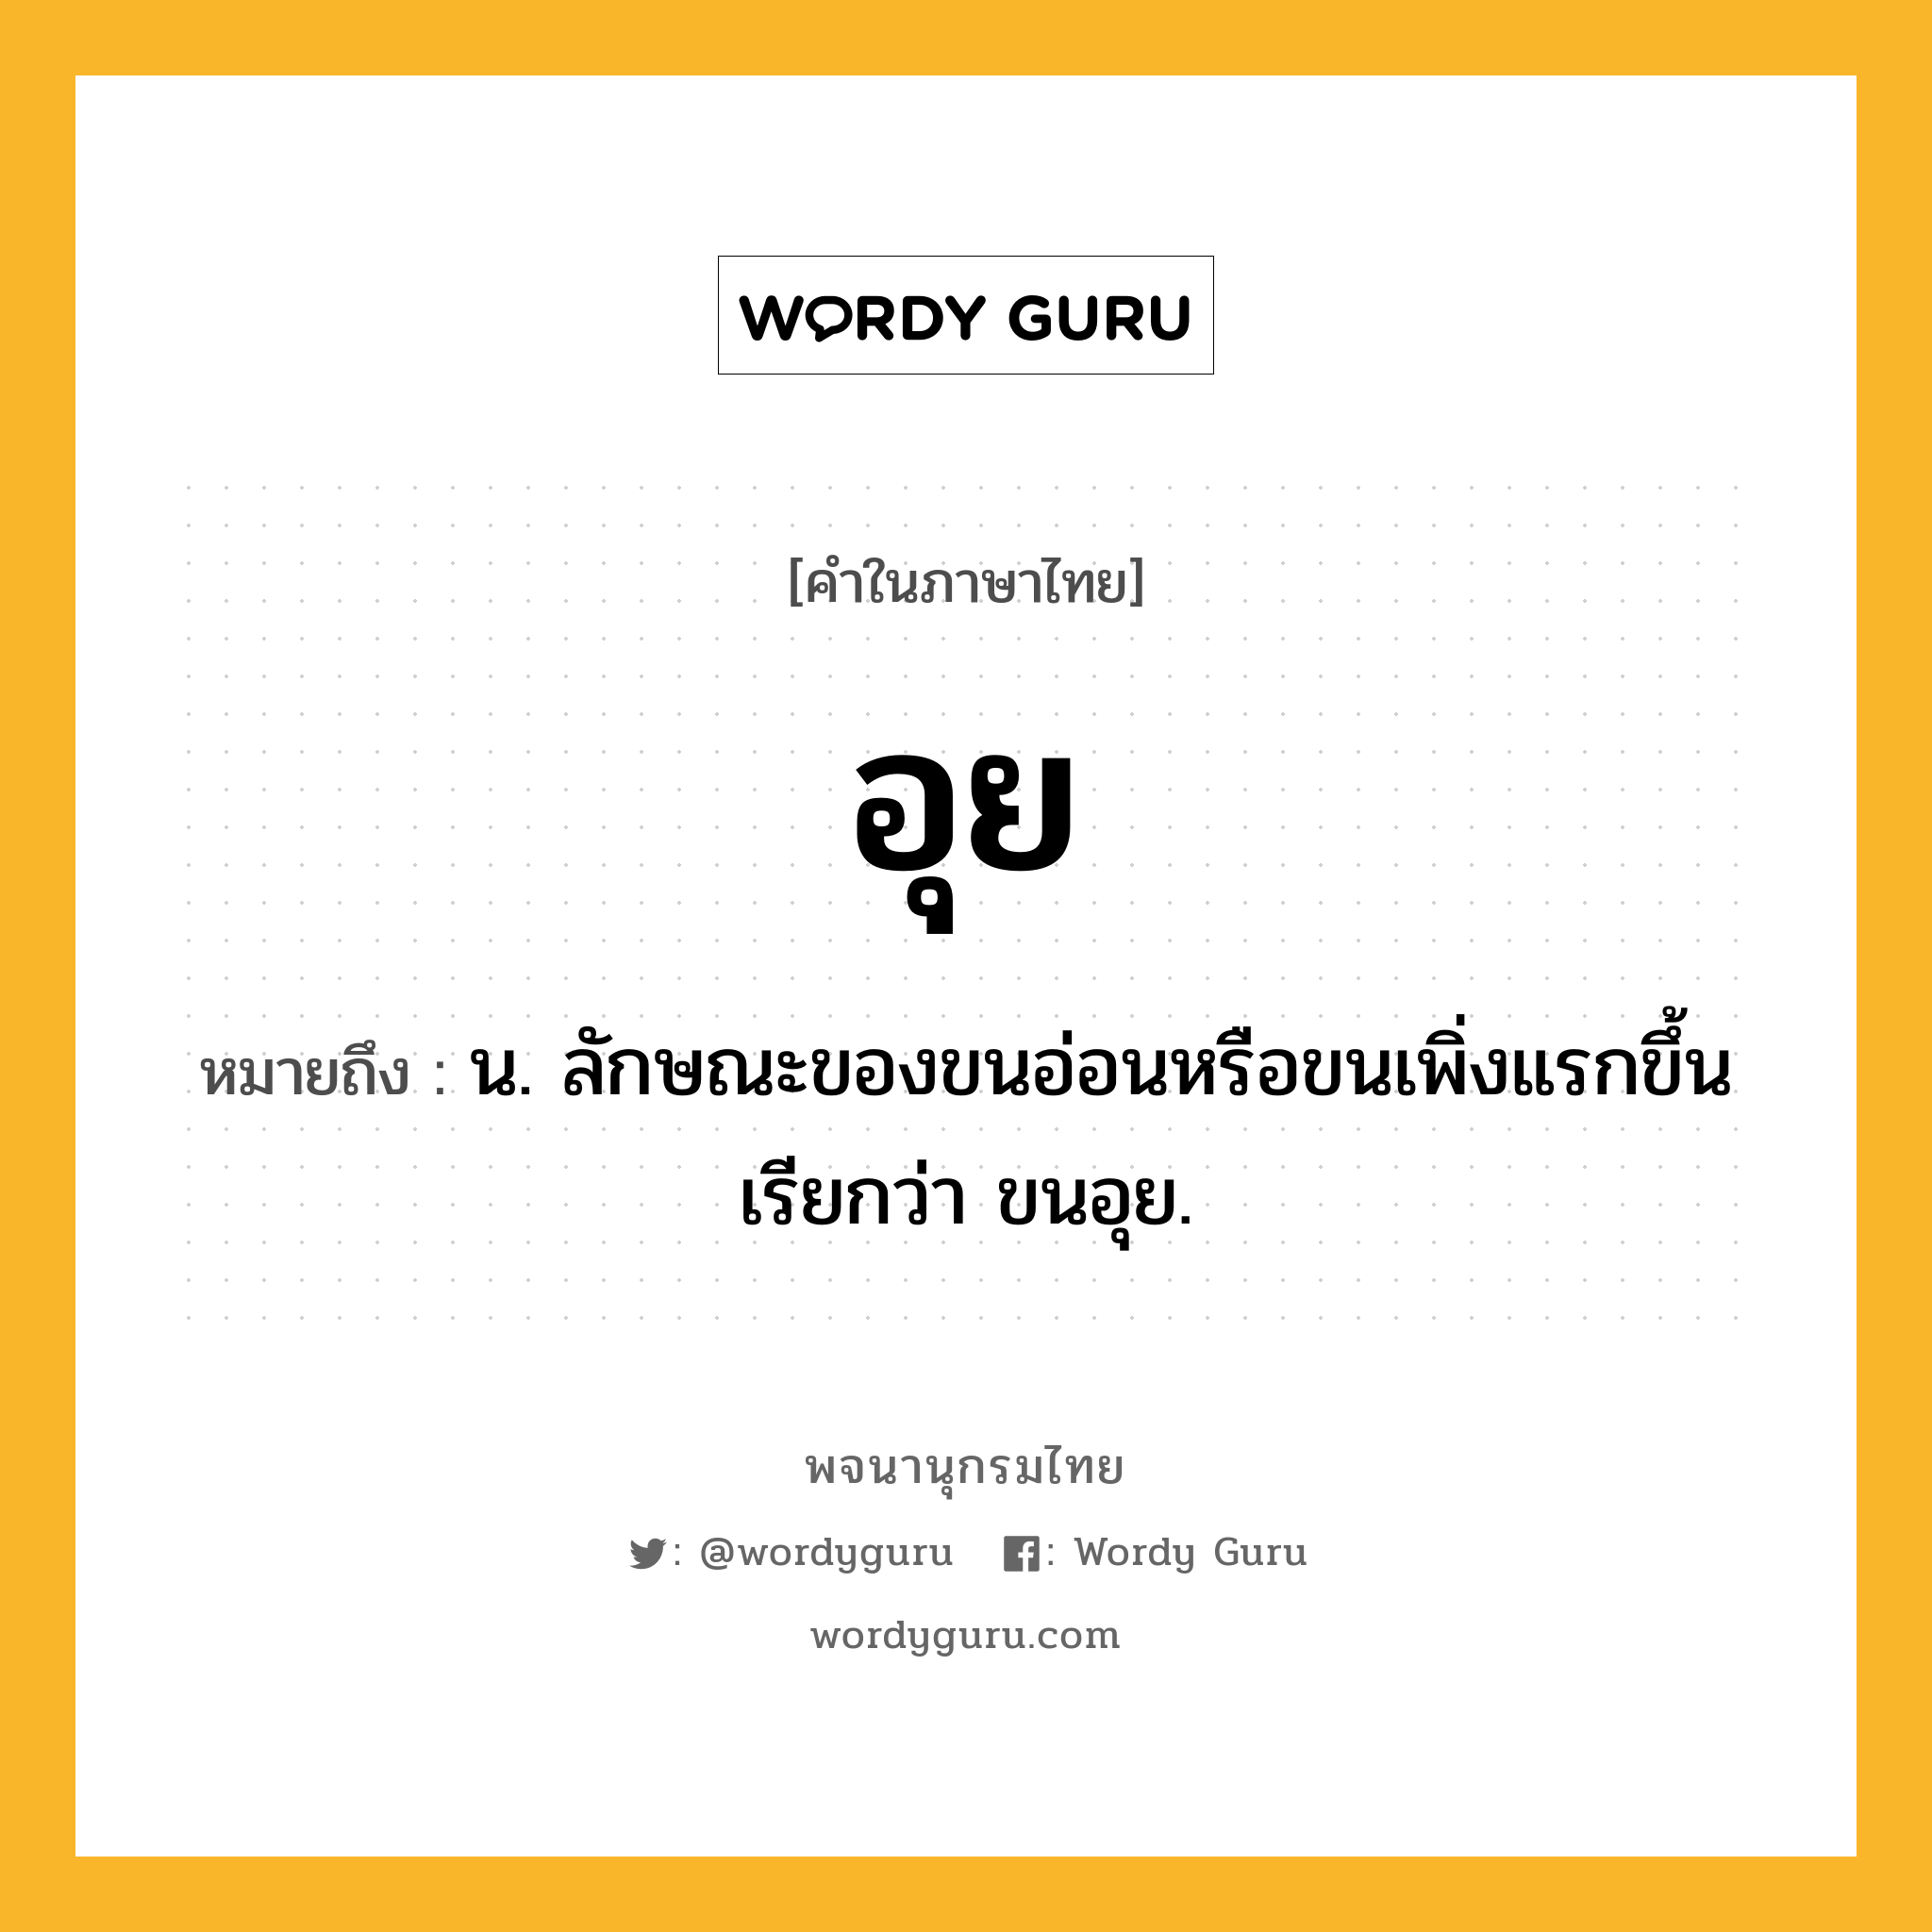 อุย หมายถึงอะไร?, คำในภาษาไทย อุย หมายถึง น. ลักษณะของขนอ่อนหรือขนเพิ่งแรกขึ้น เรียกว่า ขนอุย.